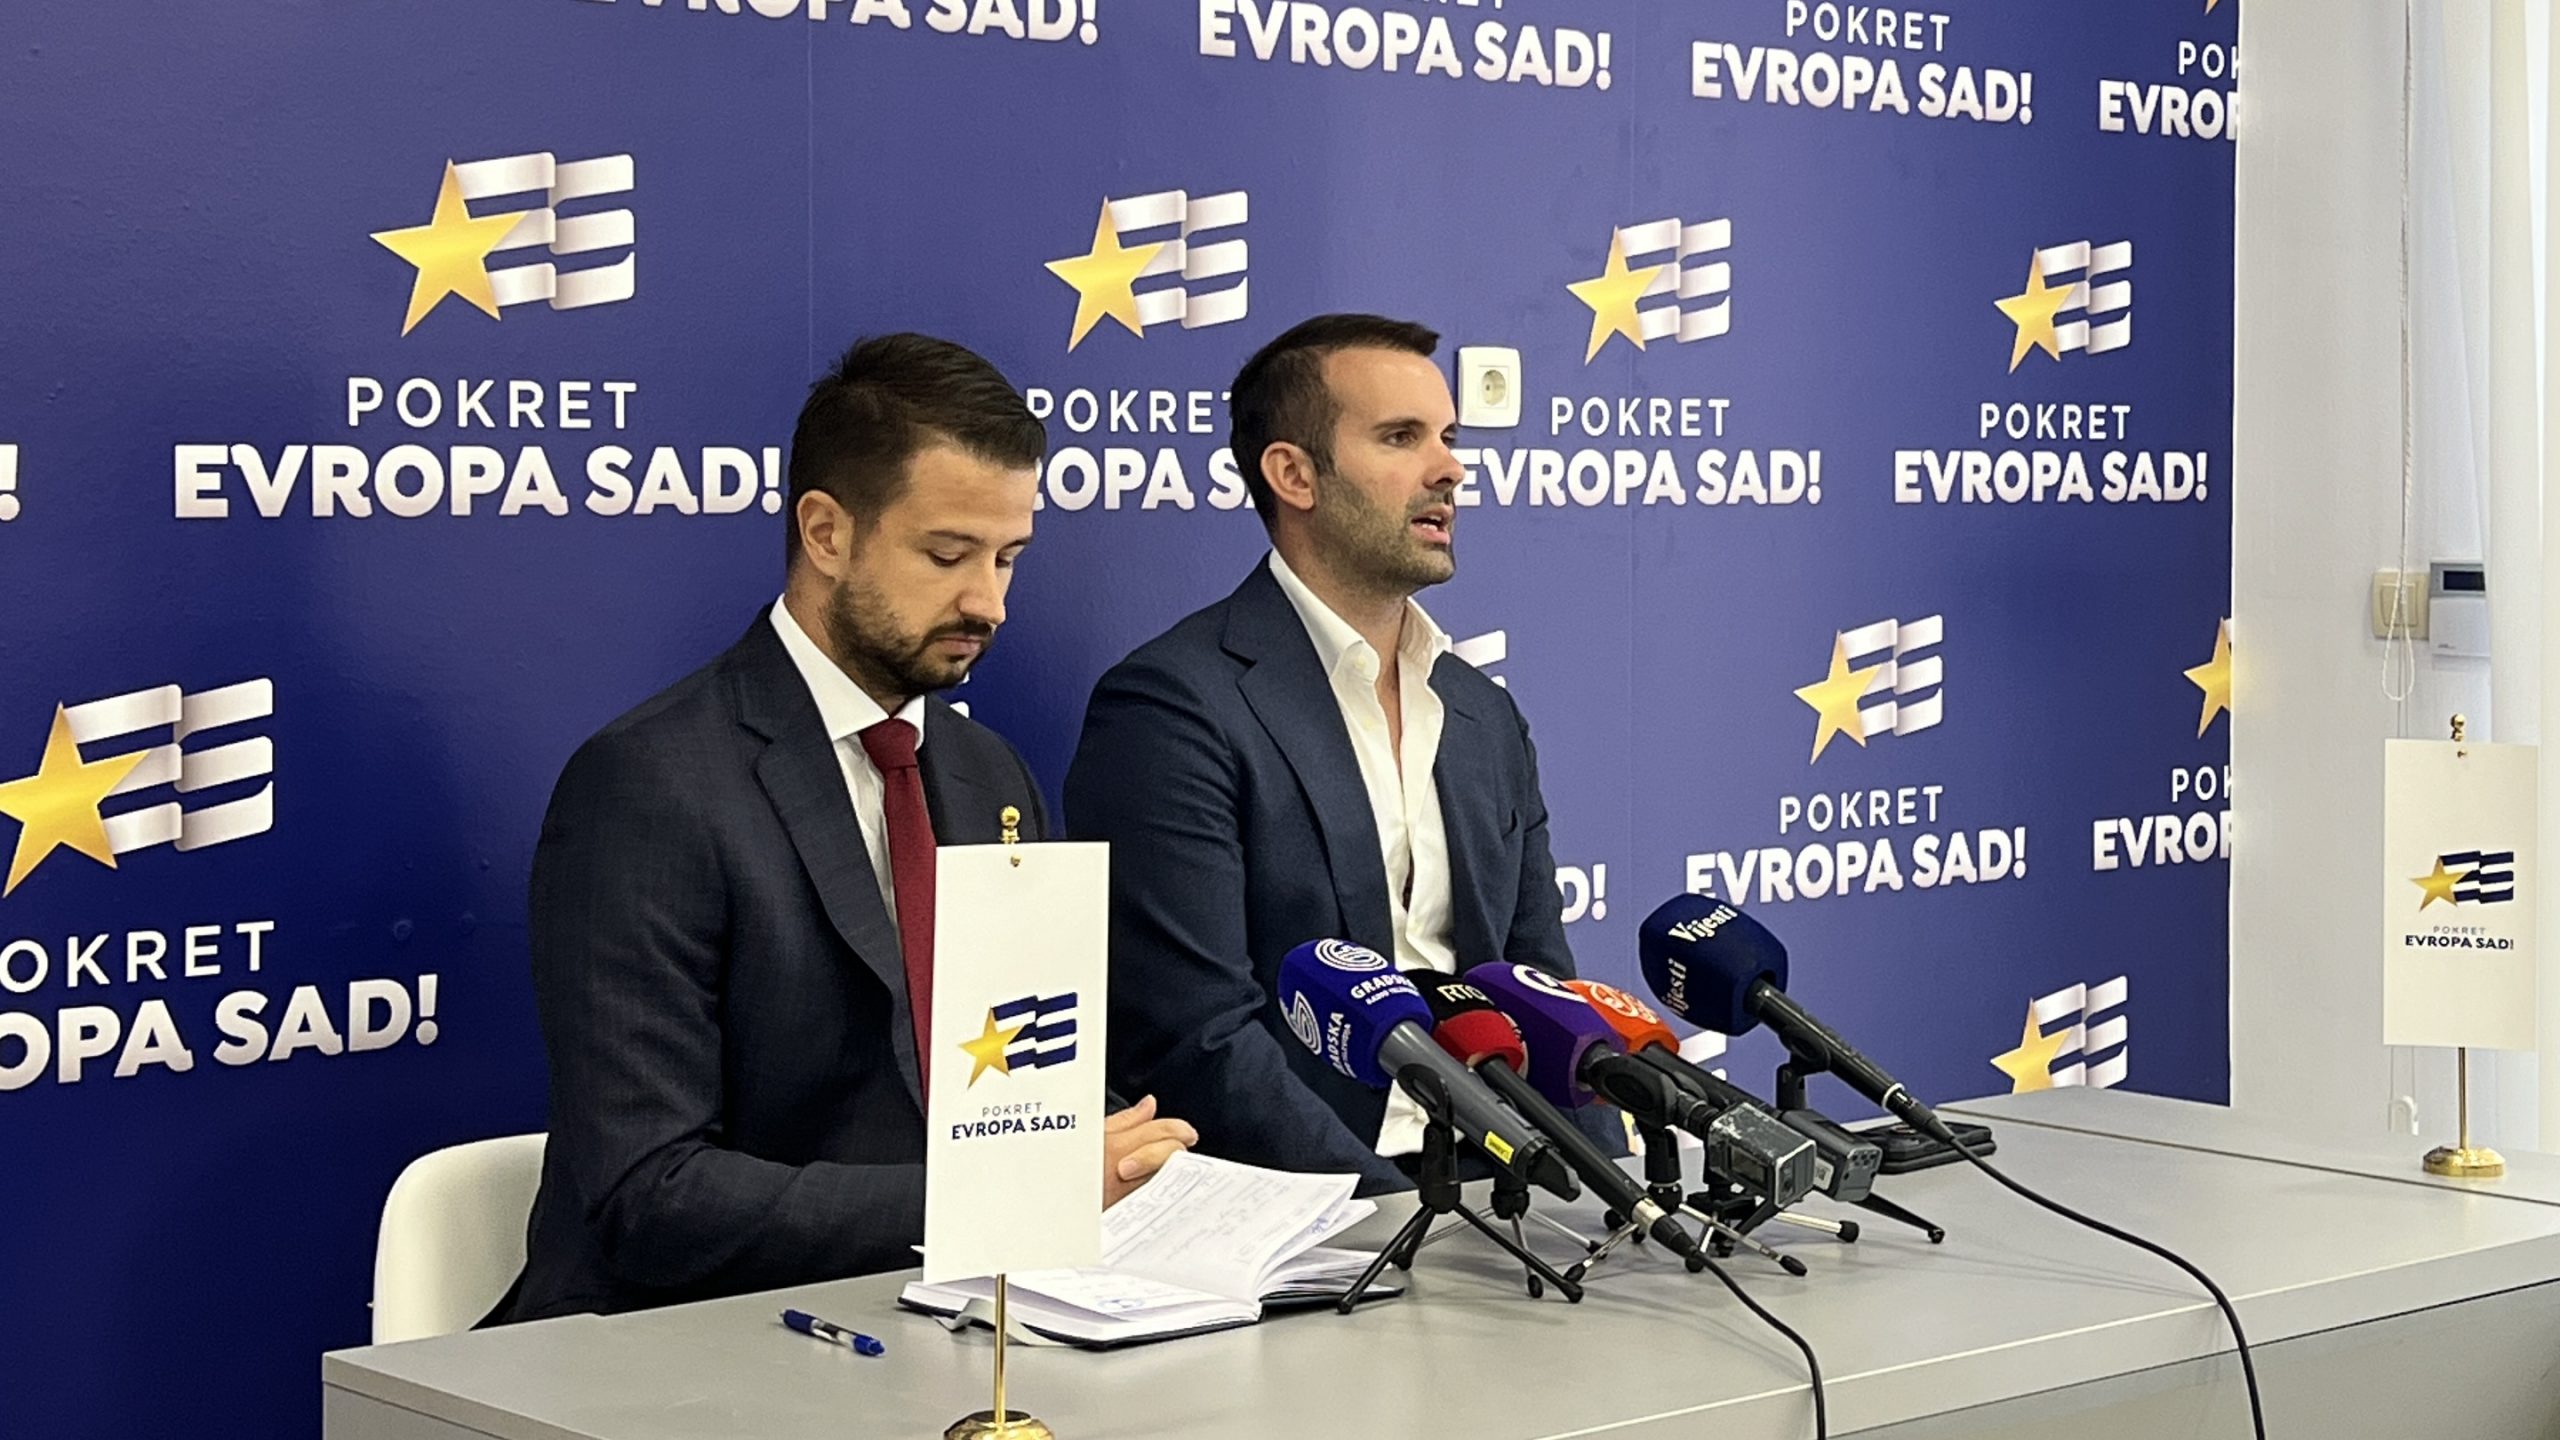 Jakov Milatović e Milojko Spajić durante una conferenza stampa del partito (foto Evropa sad)